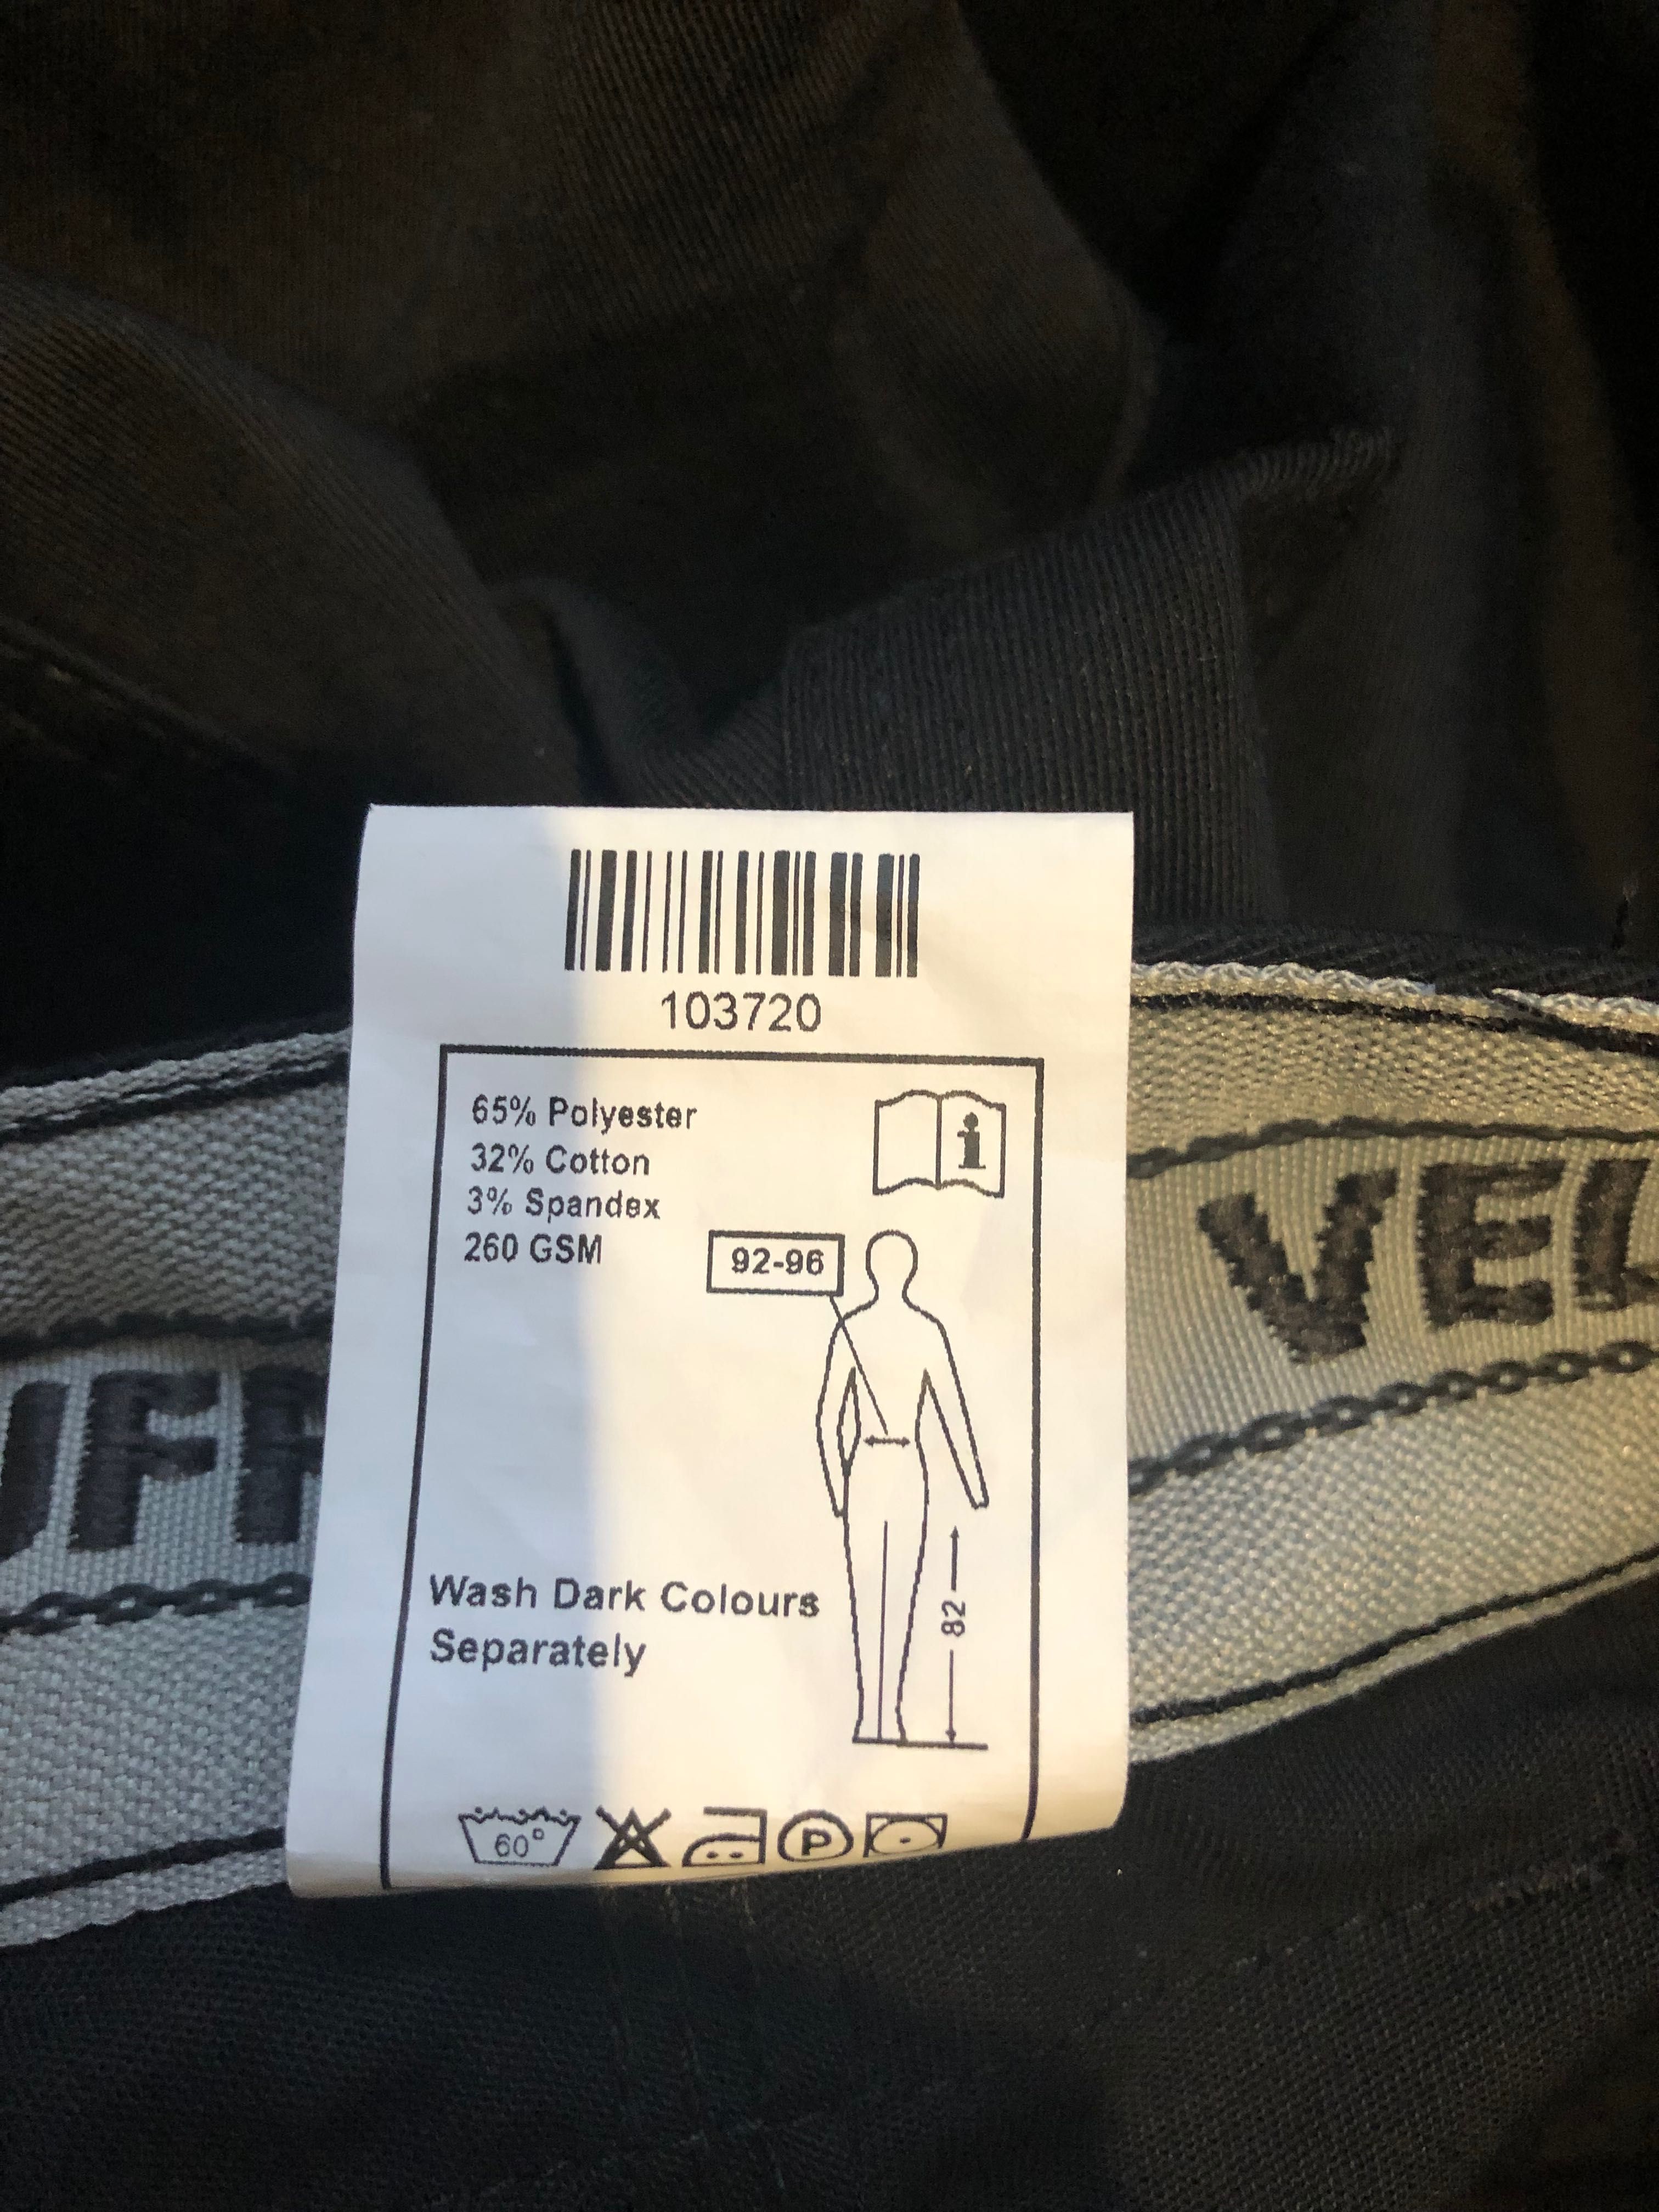 VELTUFF-pantaloni tehnici de lucru